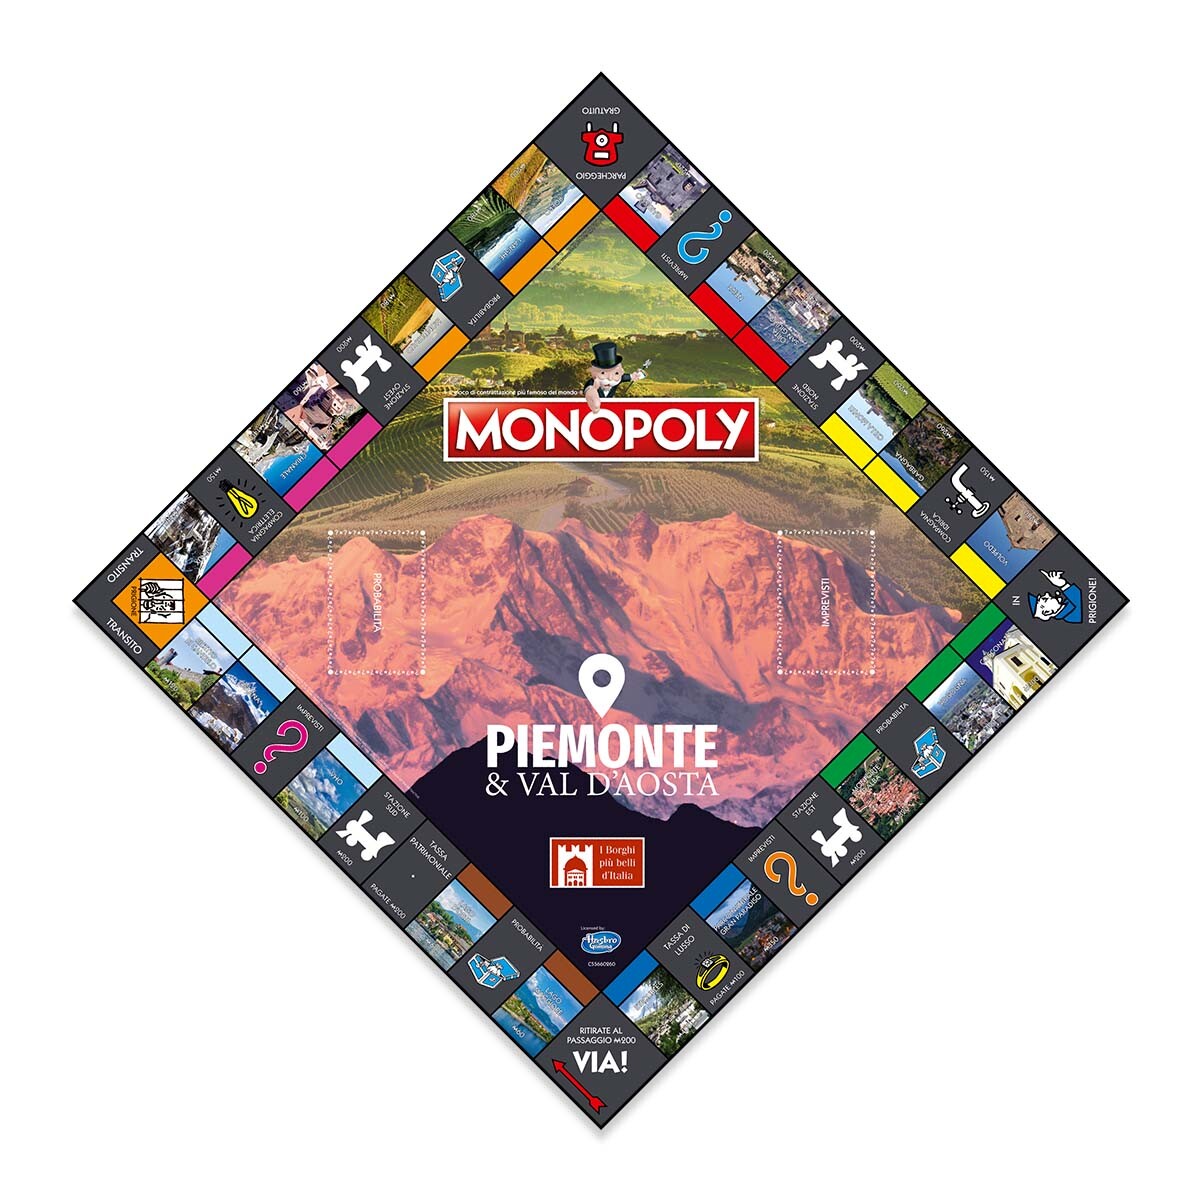 Monopoly - i borghi più belli d'italia - edizione piemonte e valle d'aosta - MONOPOLY